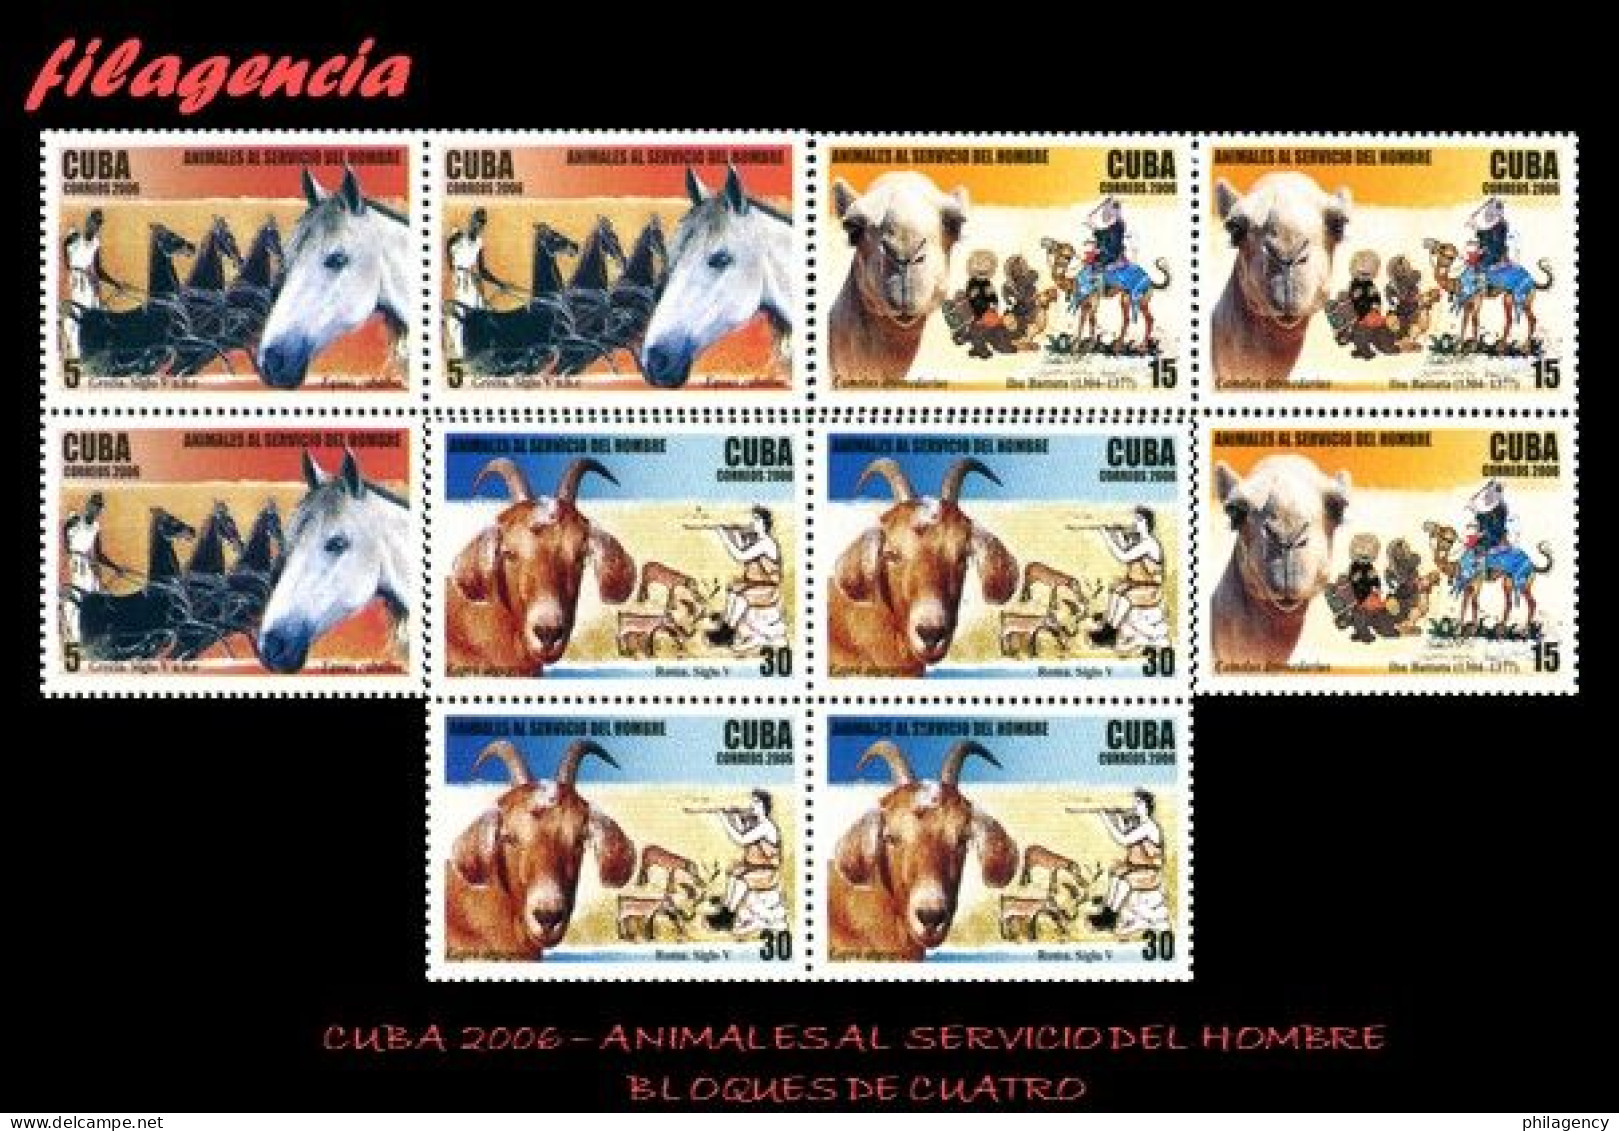 CUBA. BLOQUES DE CUATRO. 2006-24 ANIMALES AL SERVICIO DEL HOMBRE - Ungebraucht